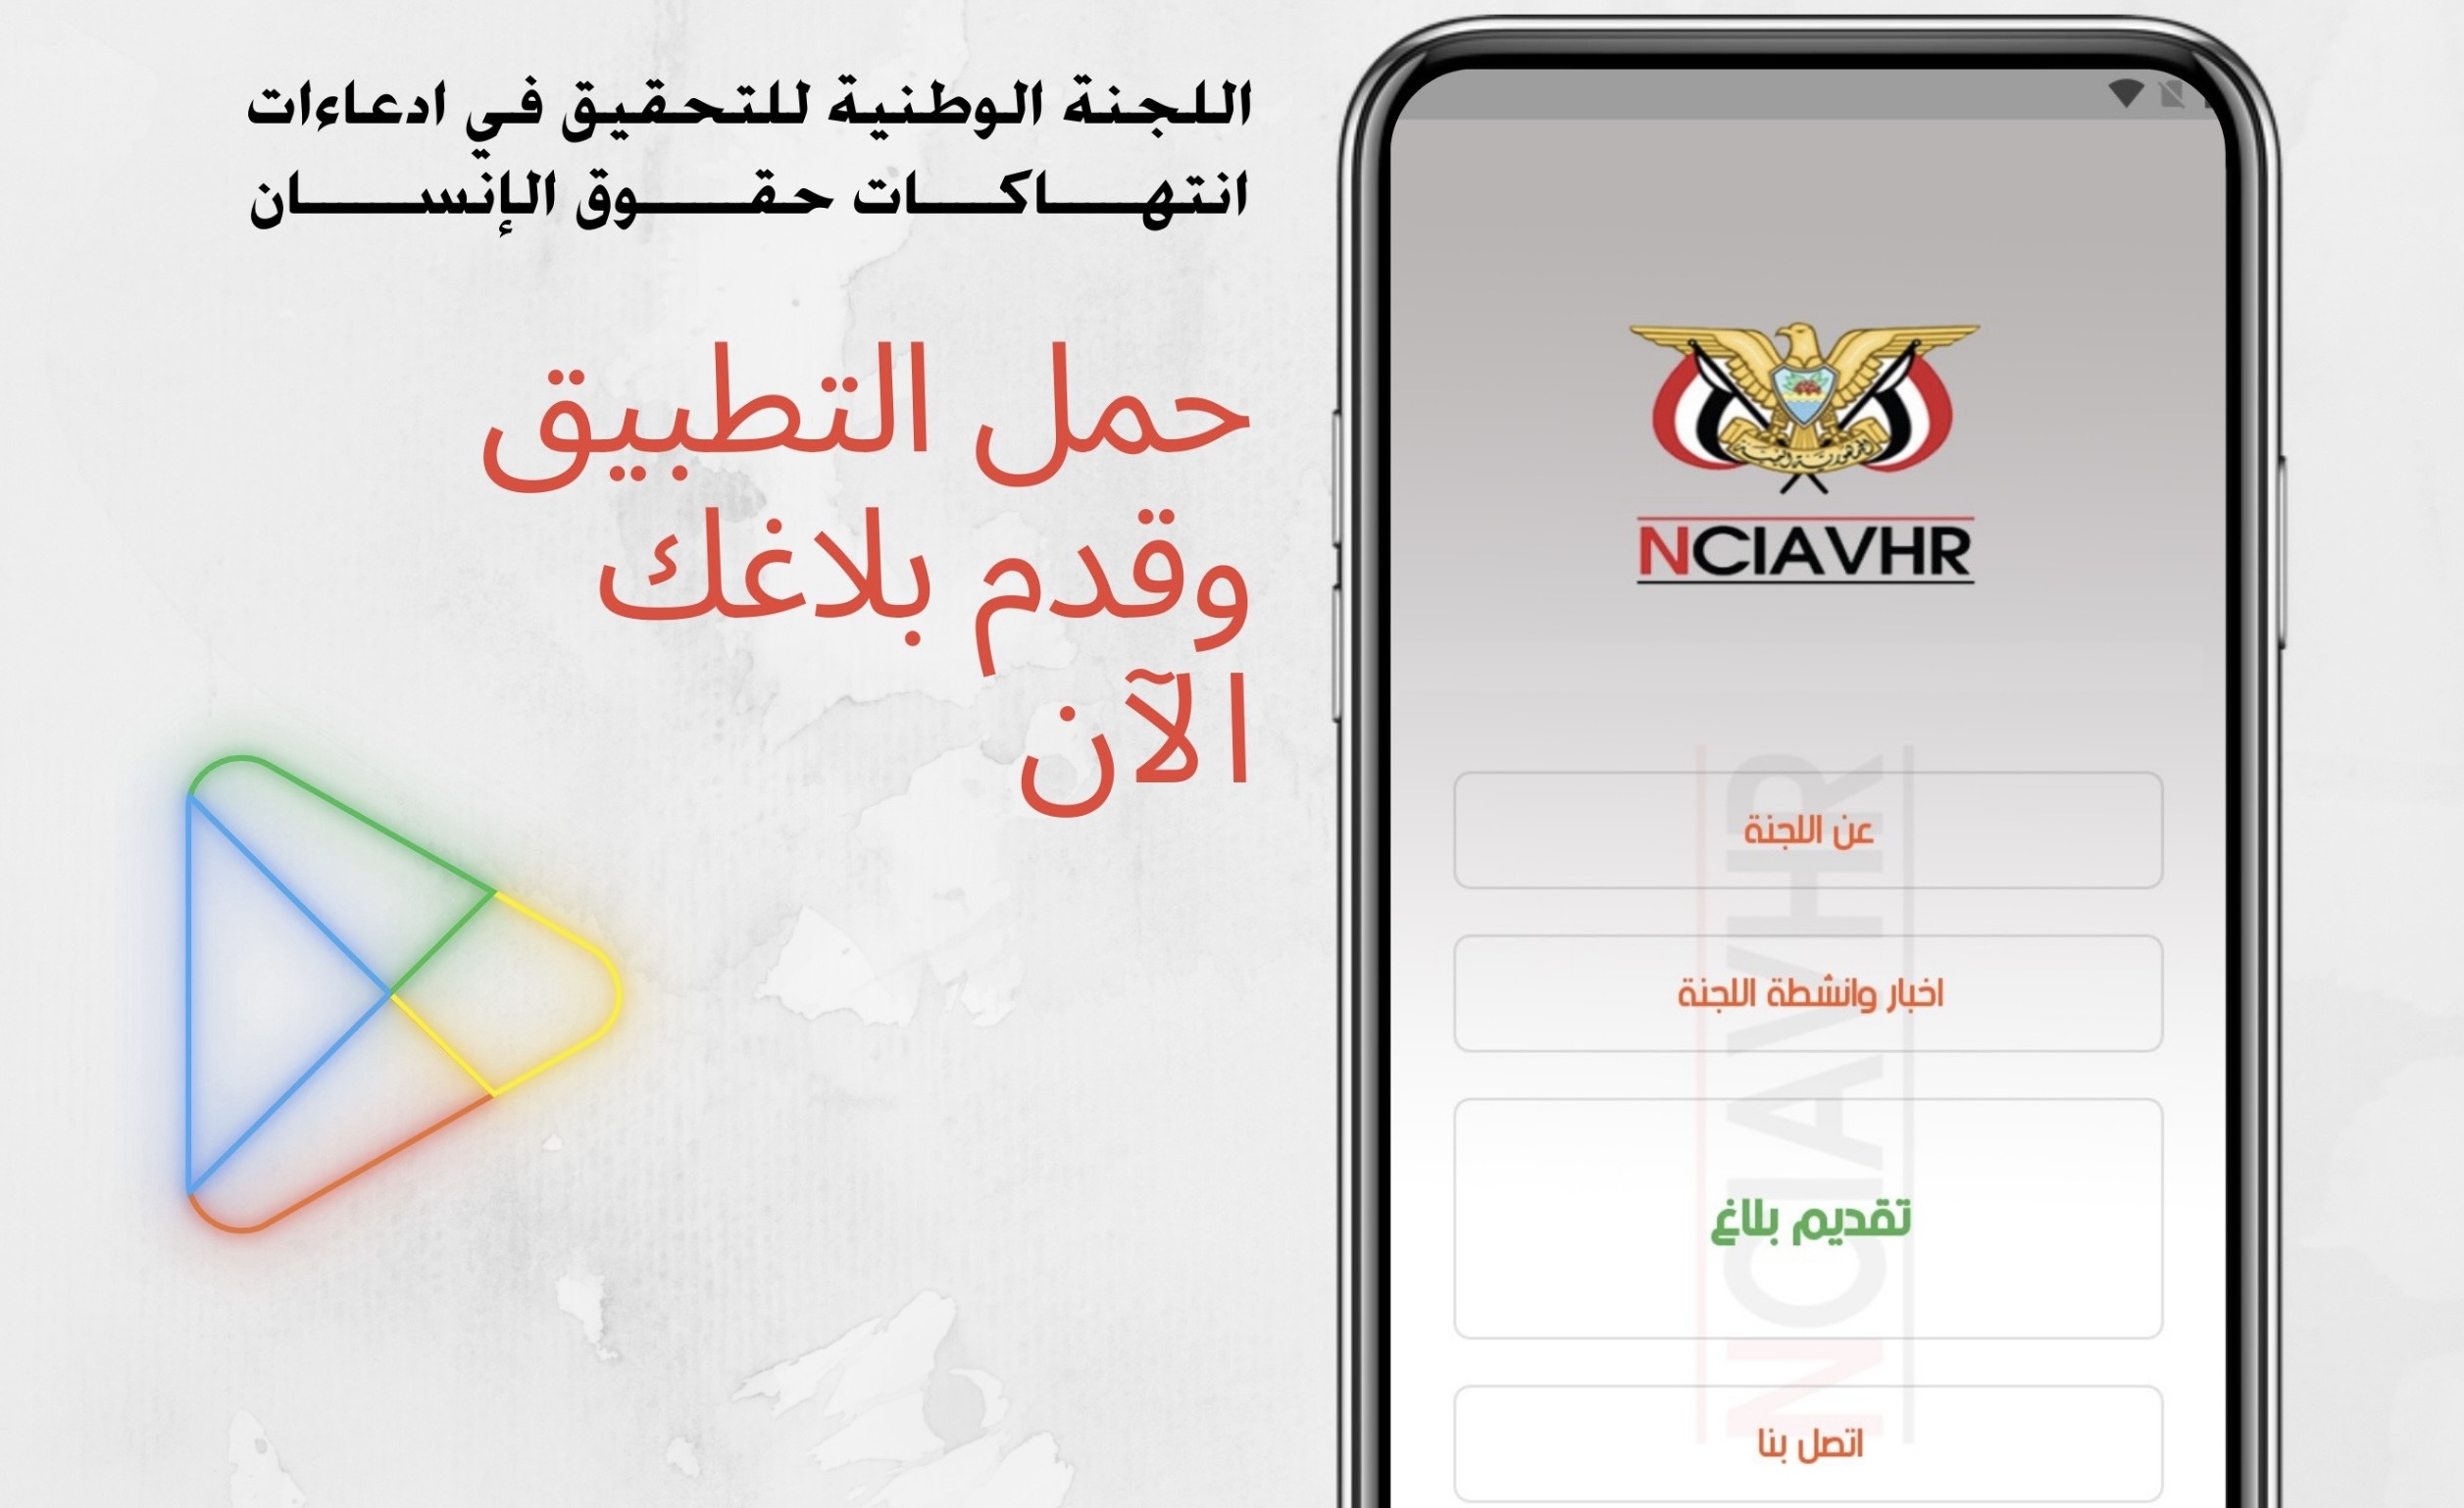 اللجنة الوطنية للتحقيق تطلق تطبيقها الالكتروني وتدعو المواطنين للإبلاغ عن أي انتهاكات